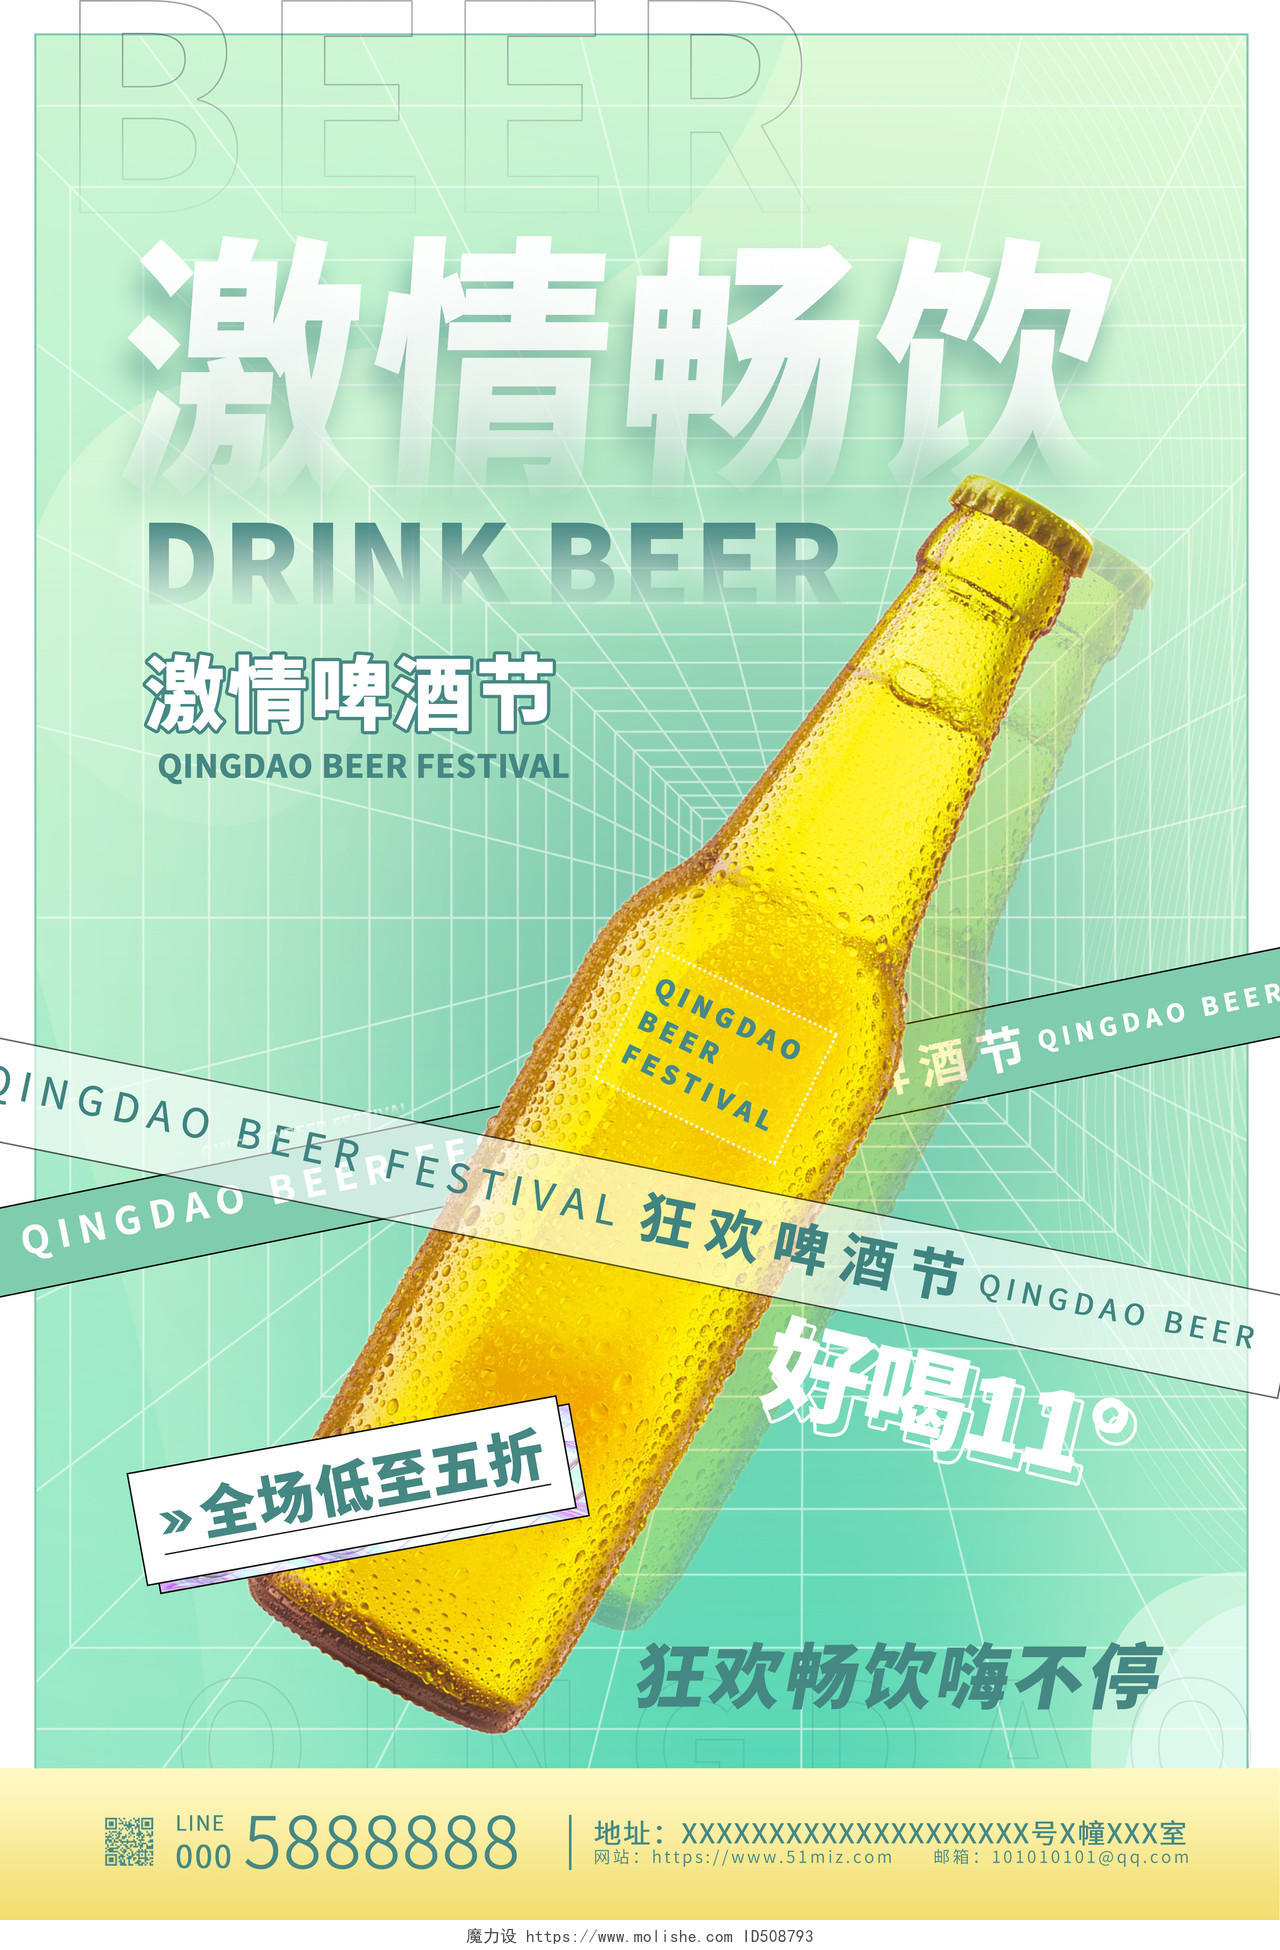 绿色酸性风激情畅饮啤酒节啤酒促销海报设计